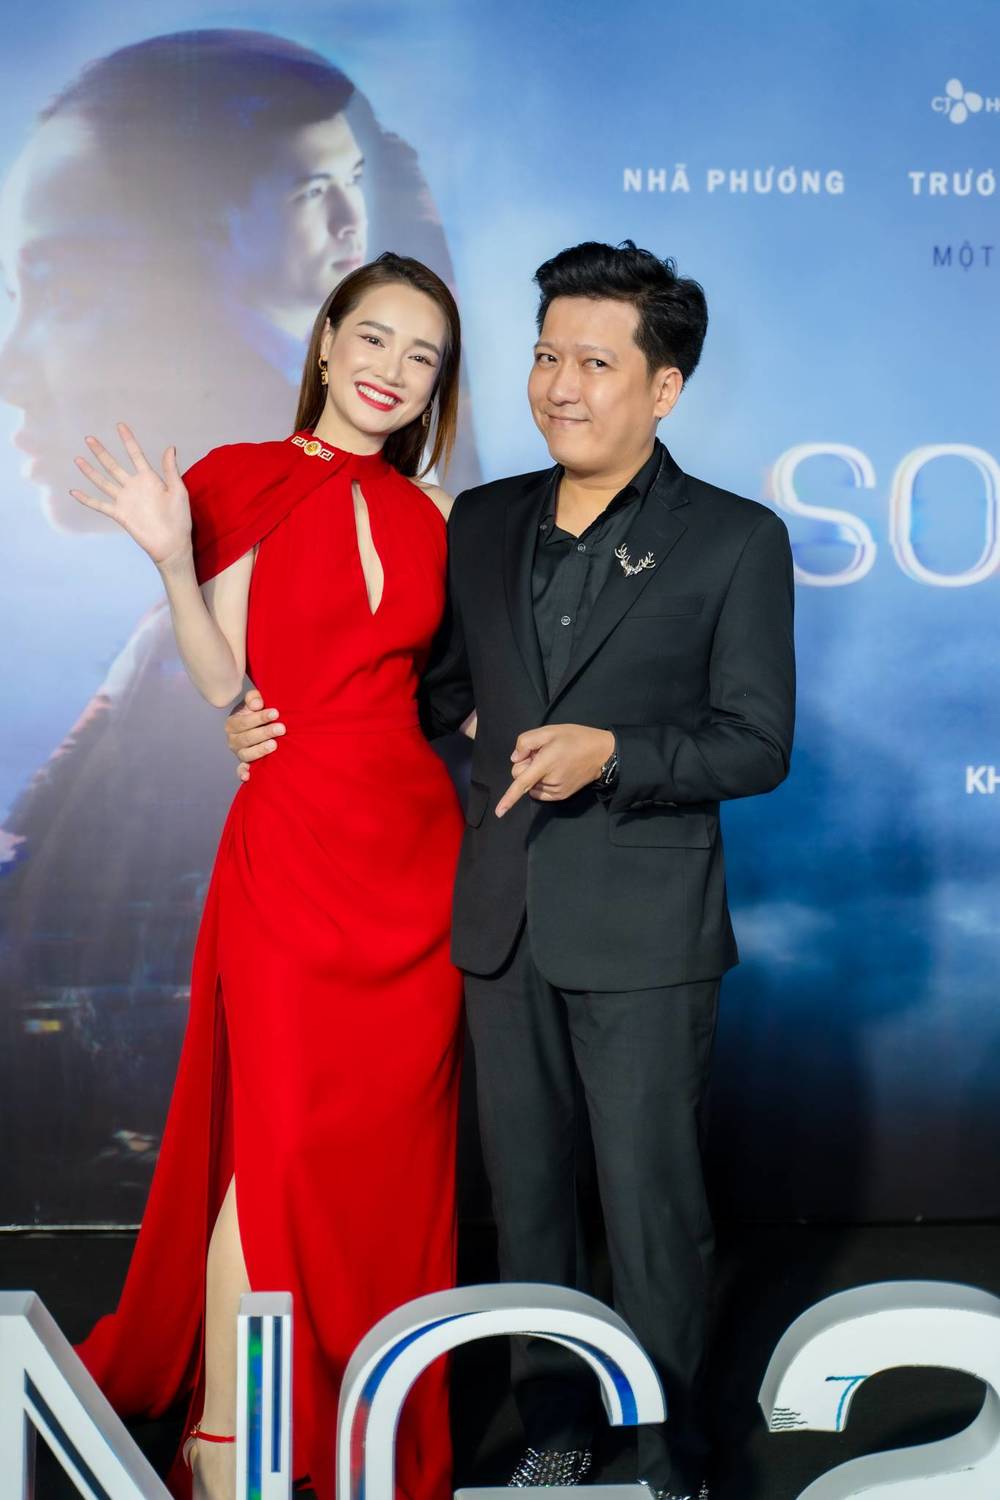  
Trường Giang đến chúc mừng bà xã Nhã Phương ra mắt 
phim điện ảnh "Song Song". (Ảnh: Facebook nhân vật)